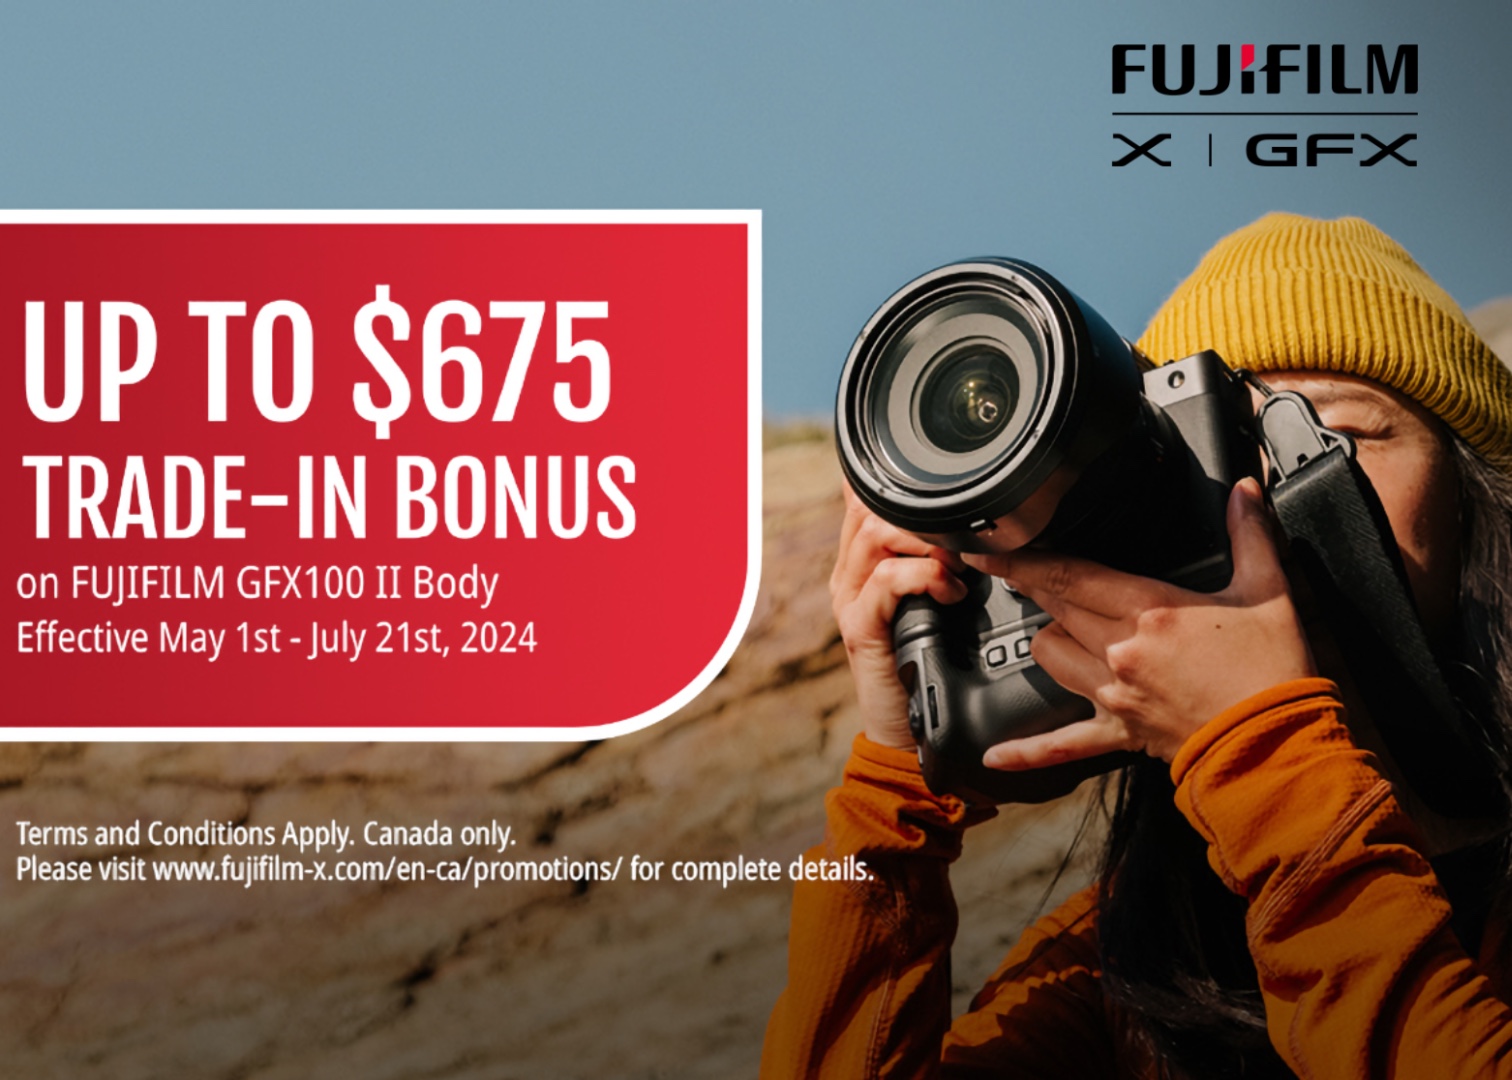 Take advantage of a trade-in bonus for the Fujifilm GFX 100 II